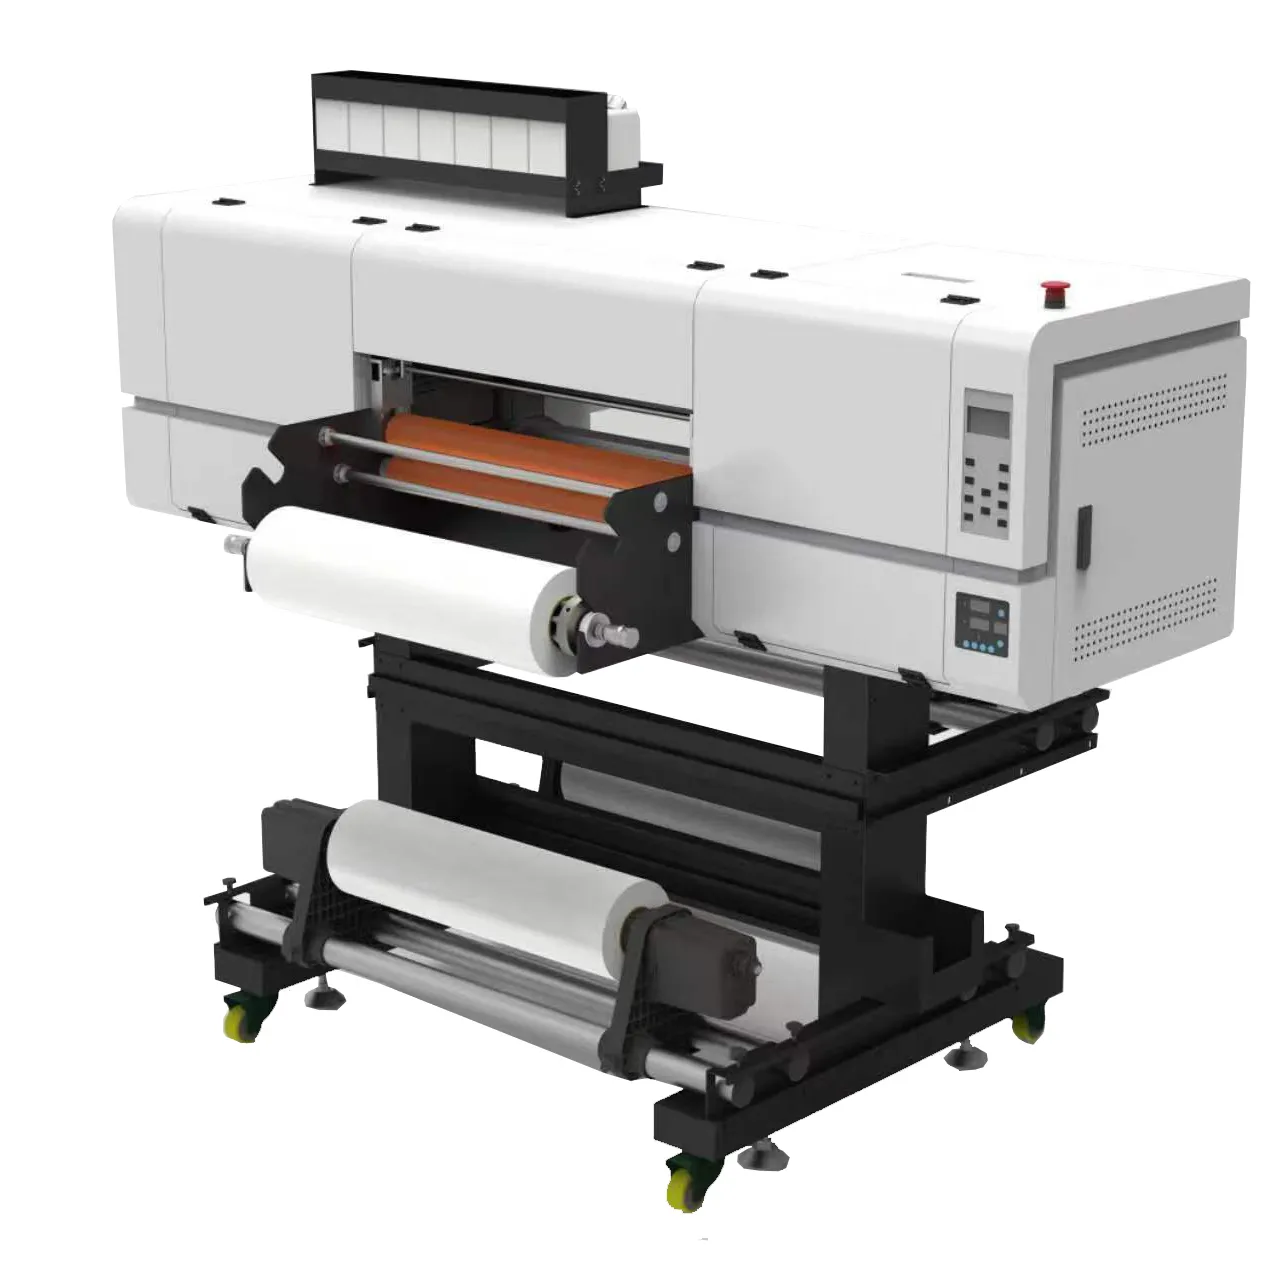 เครื่องพิมพ์ยูวี DTF 1ชิ้นเครื่องพิมพ์ฟิล์มเอบี60ซม. เครื่องพิมพ์ยูวีแบบม้วนเป็นม้วนสำหรับการพิมพ์ฉลากด้วยรังสียูวีคริสตัล UV